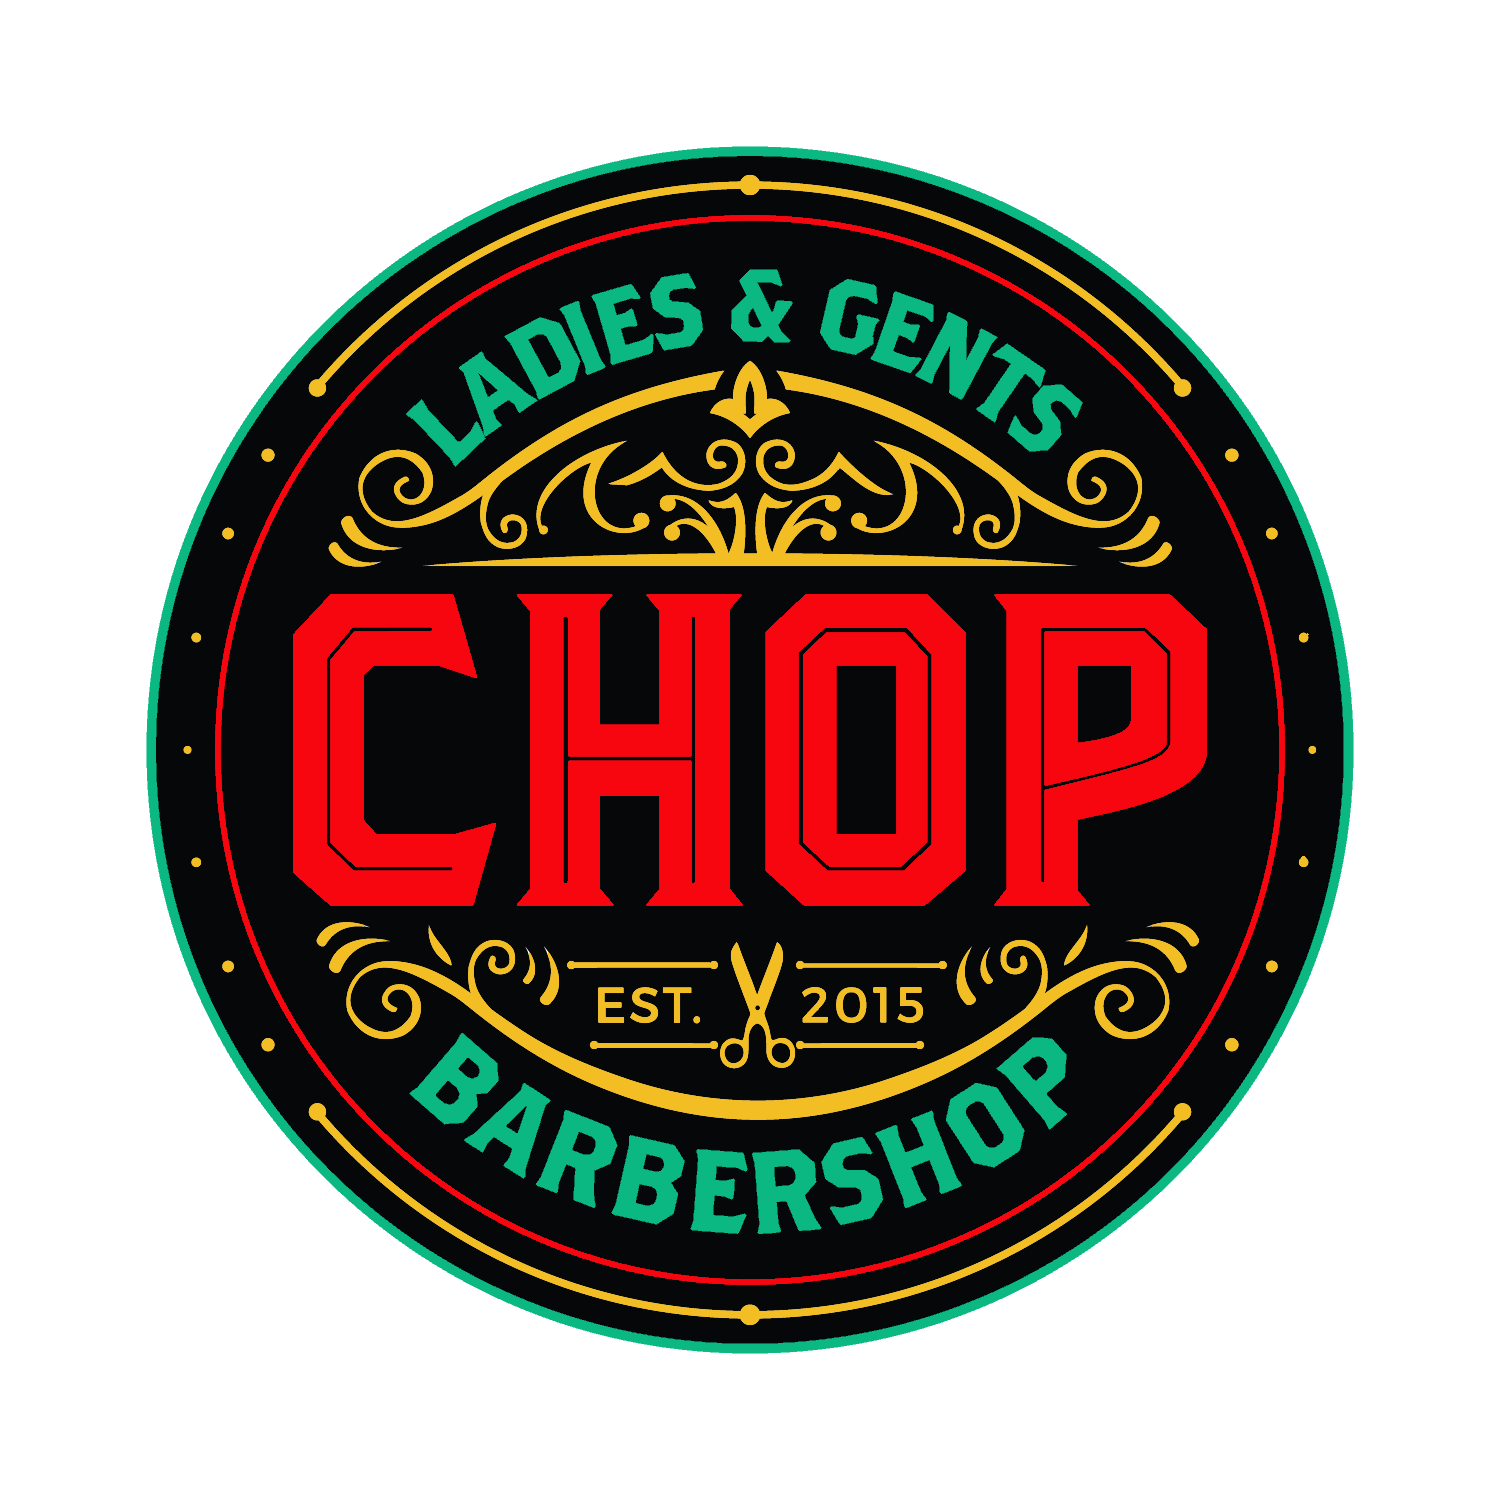 CHOP Barbershop